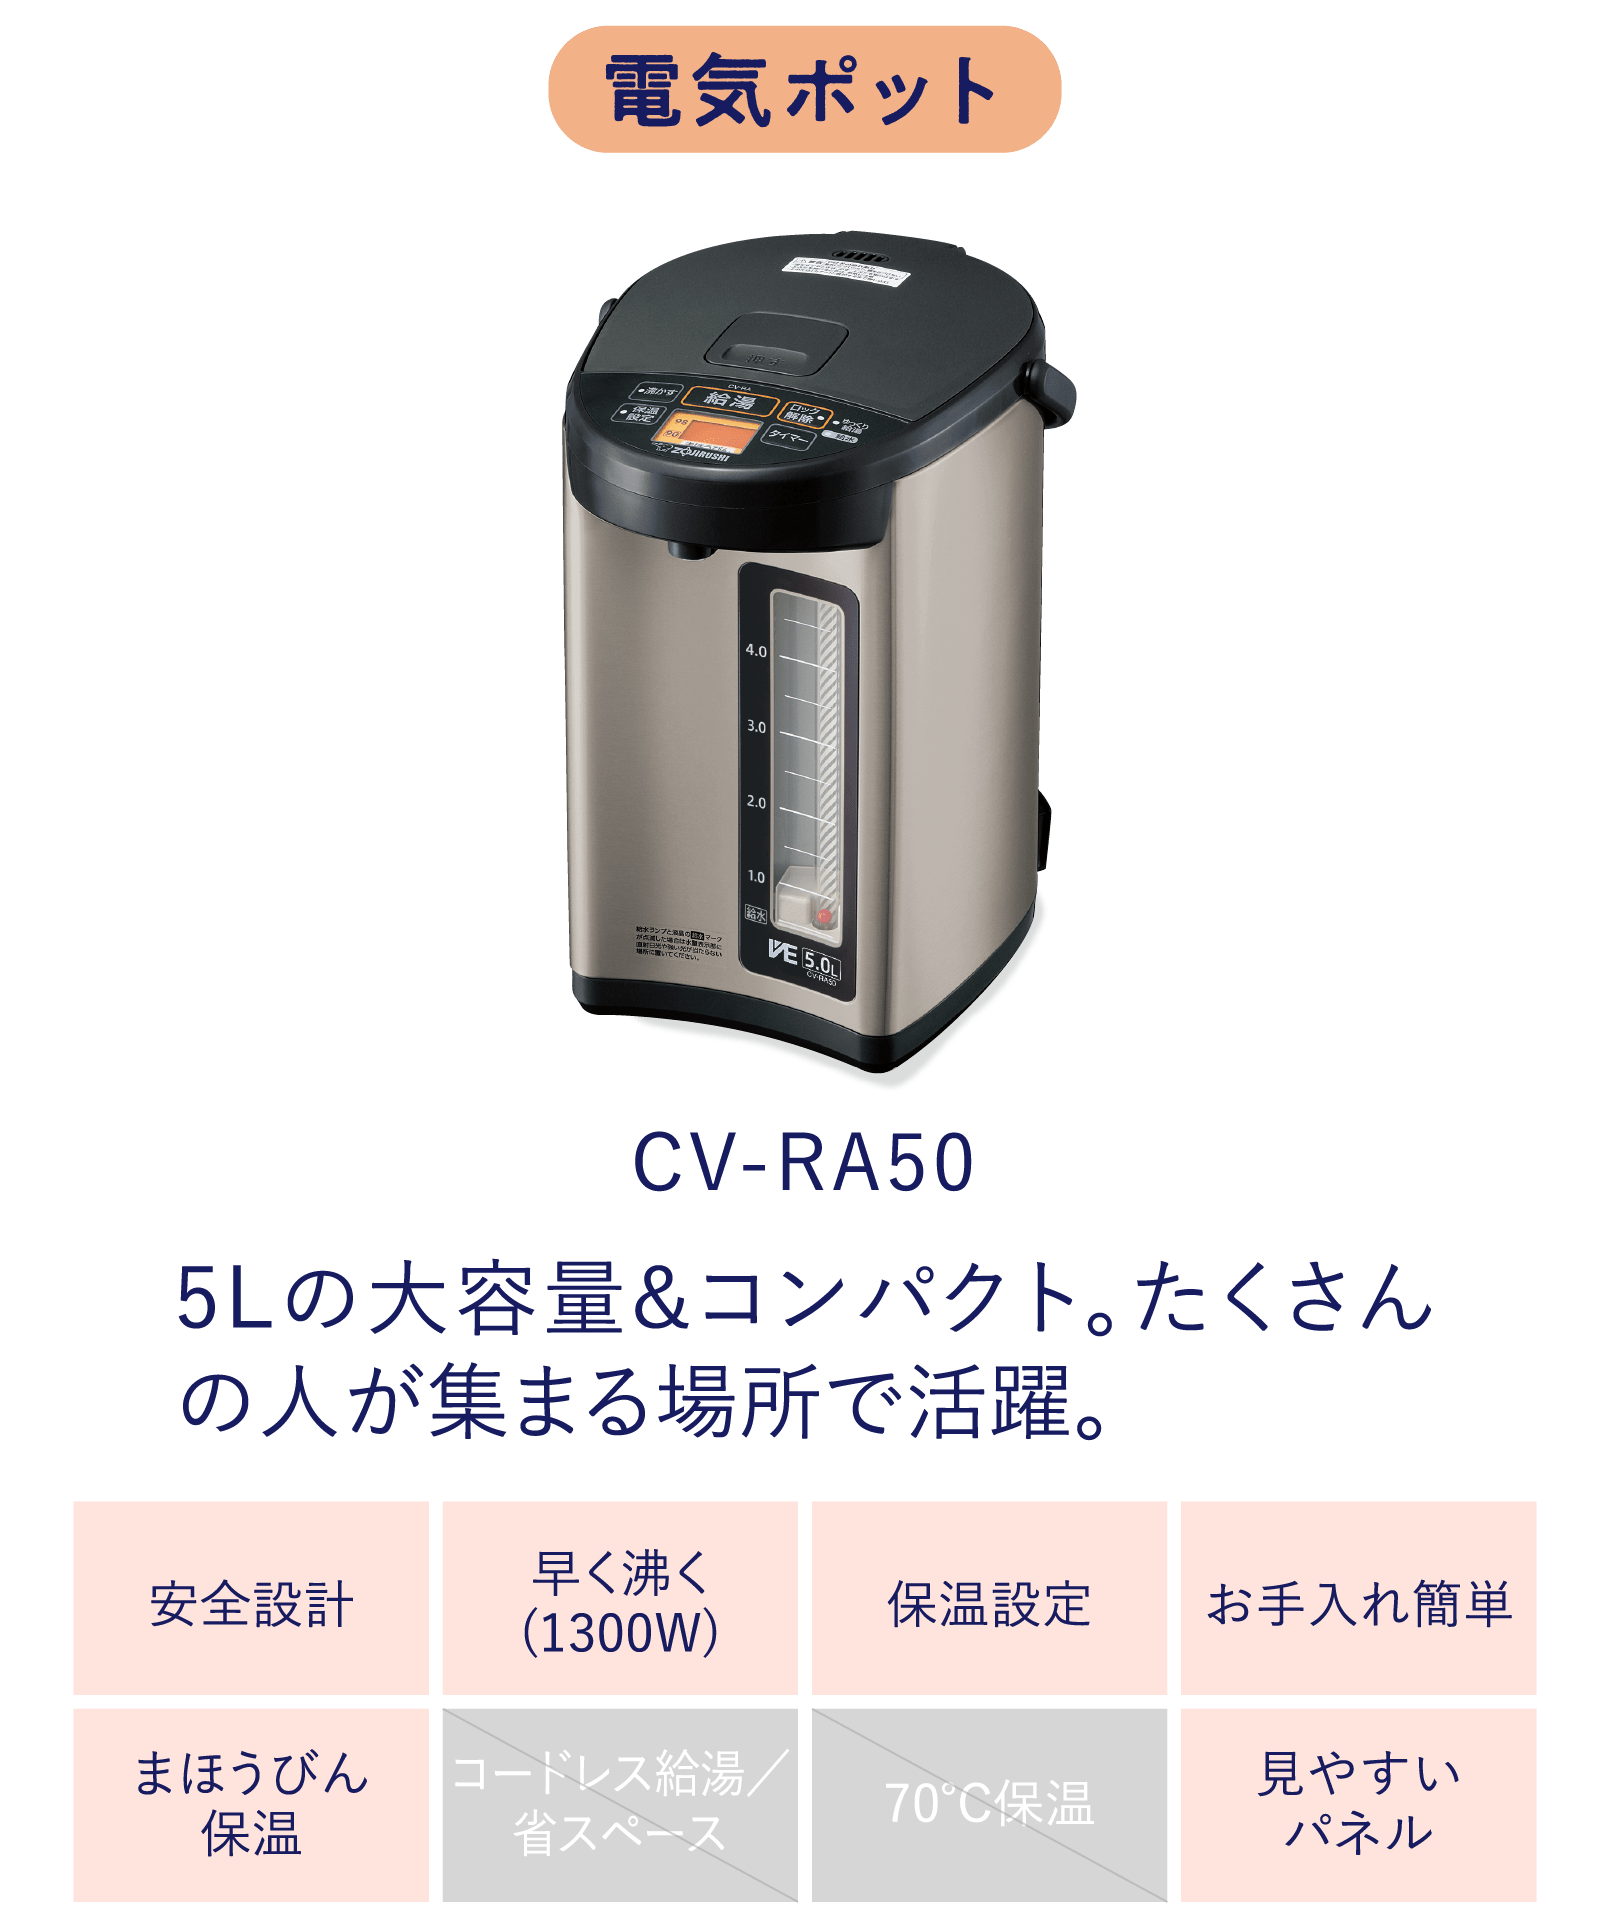 CV-RA50